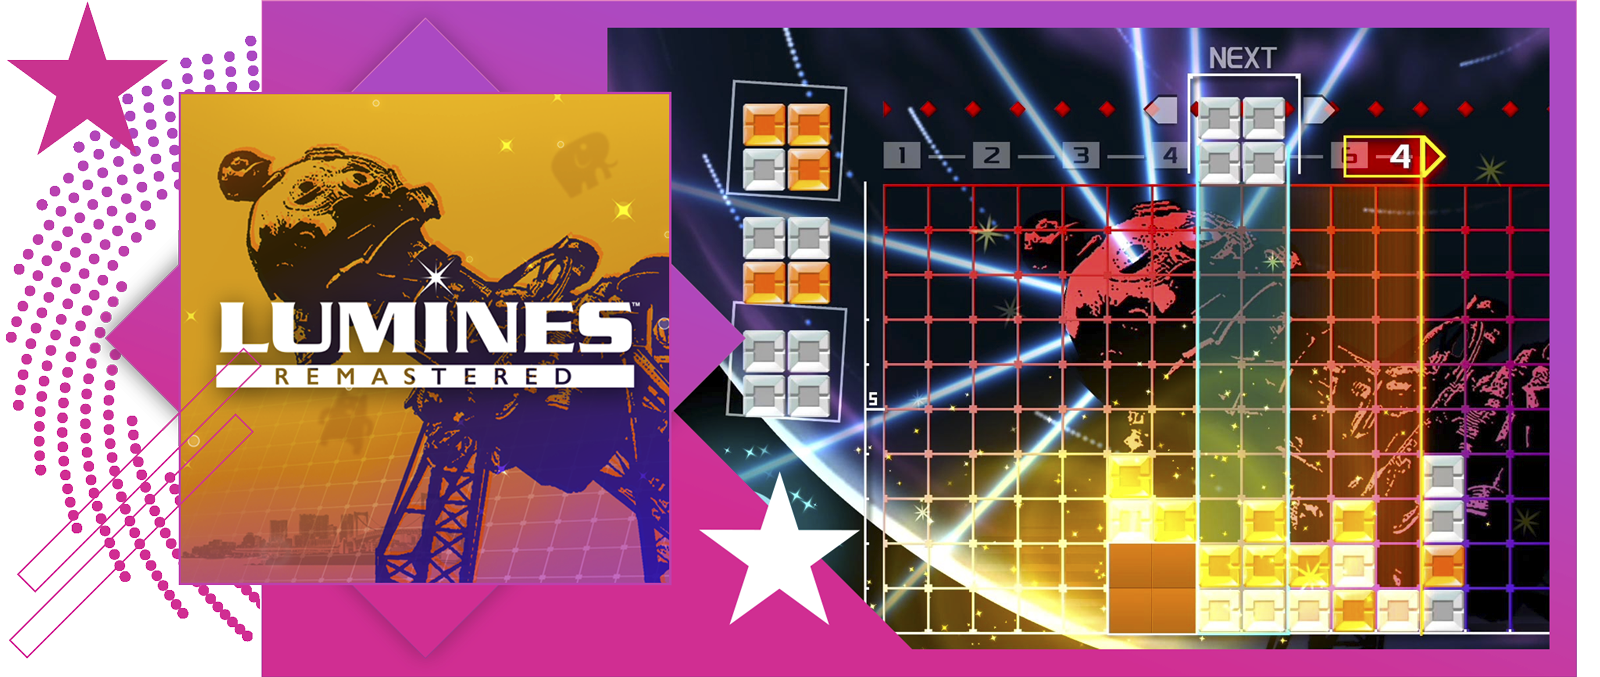 I migliori giochi musicali - Immagine in evidenza che include immagine principale e immagine del sistema di gioco di Lumines Remastered.